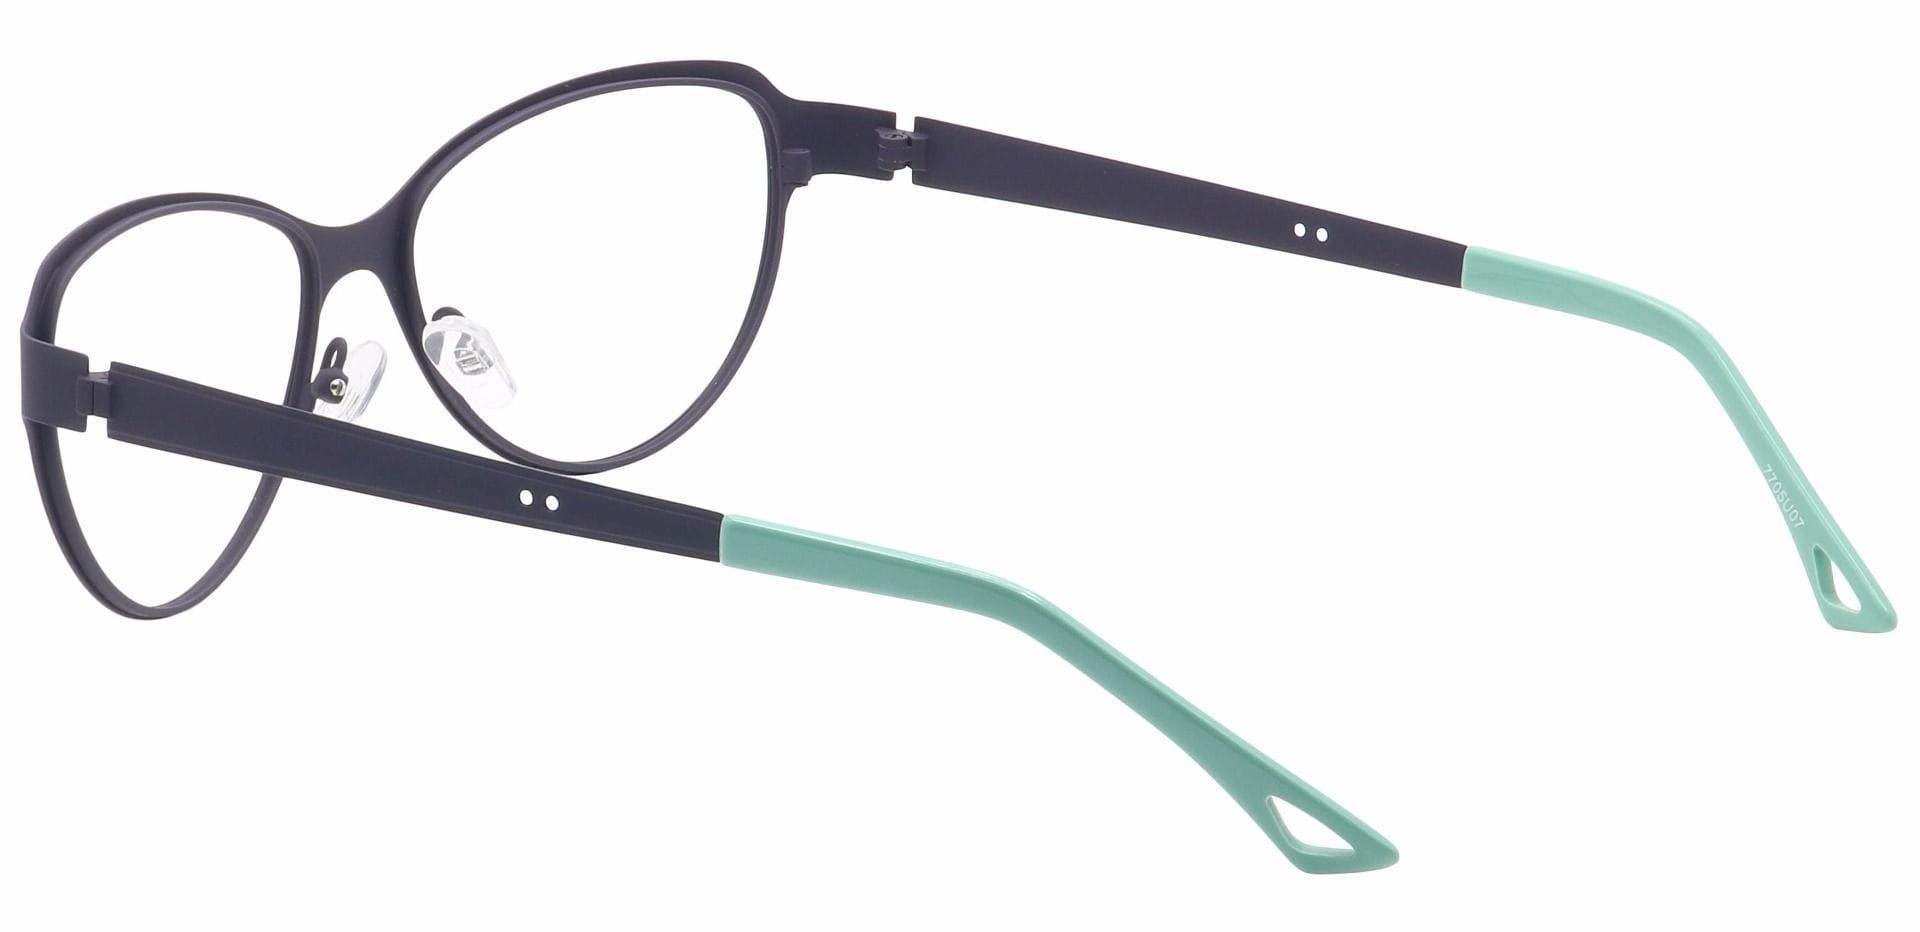 Sierra Cat-Eye Progressive Glasses - Blue